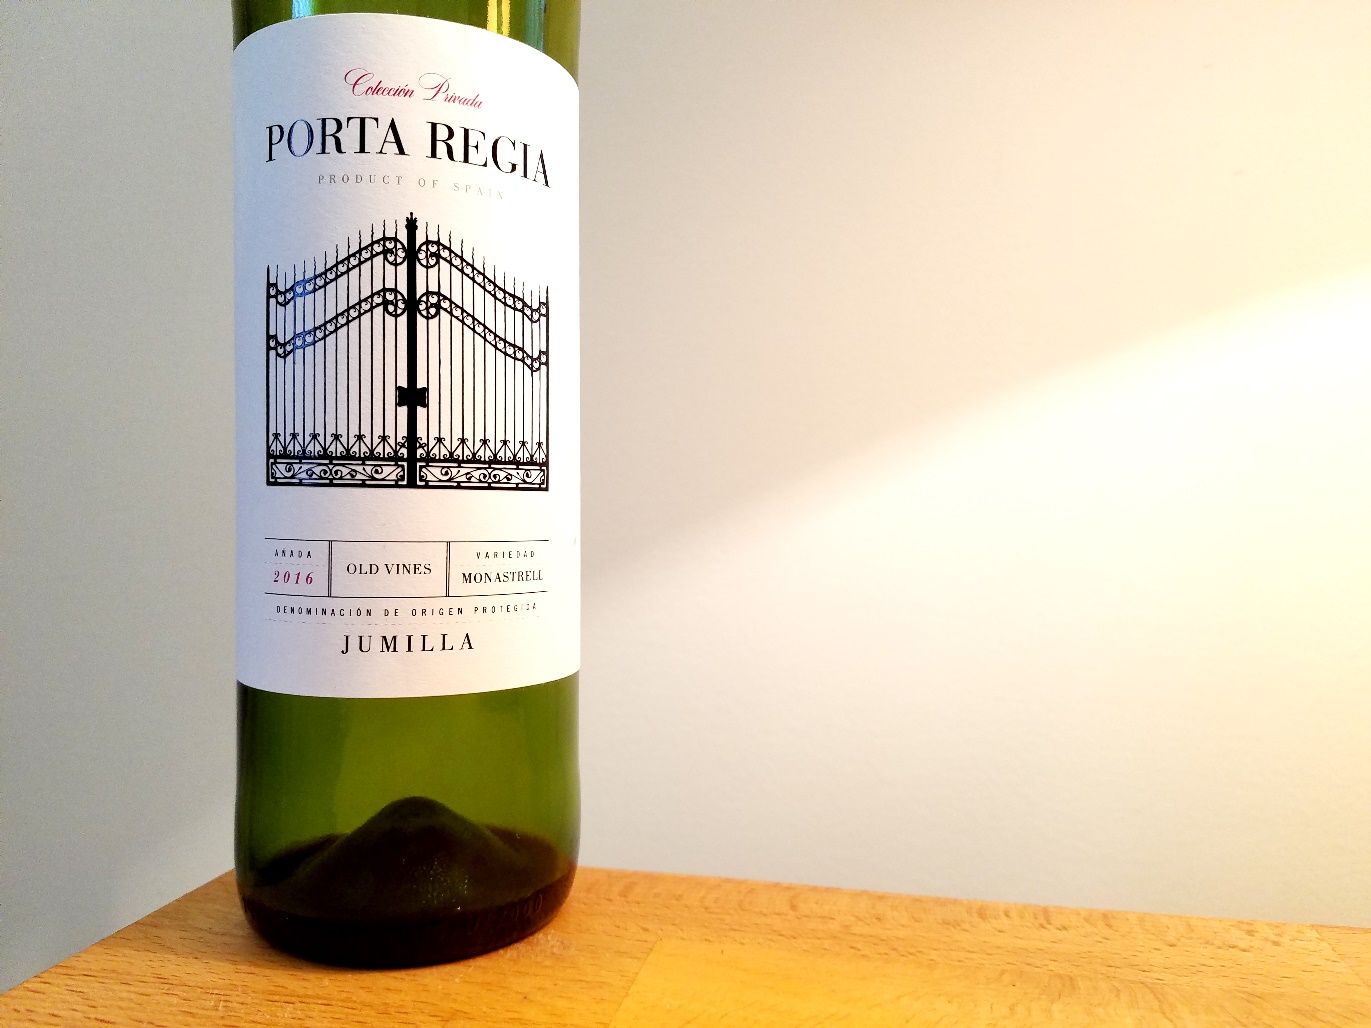 Sierra Norte, Colección Privada Porta Regia Old Vine Monastrell 2016, Jumilla, Spain, Wine Casual